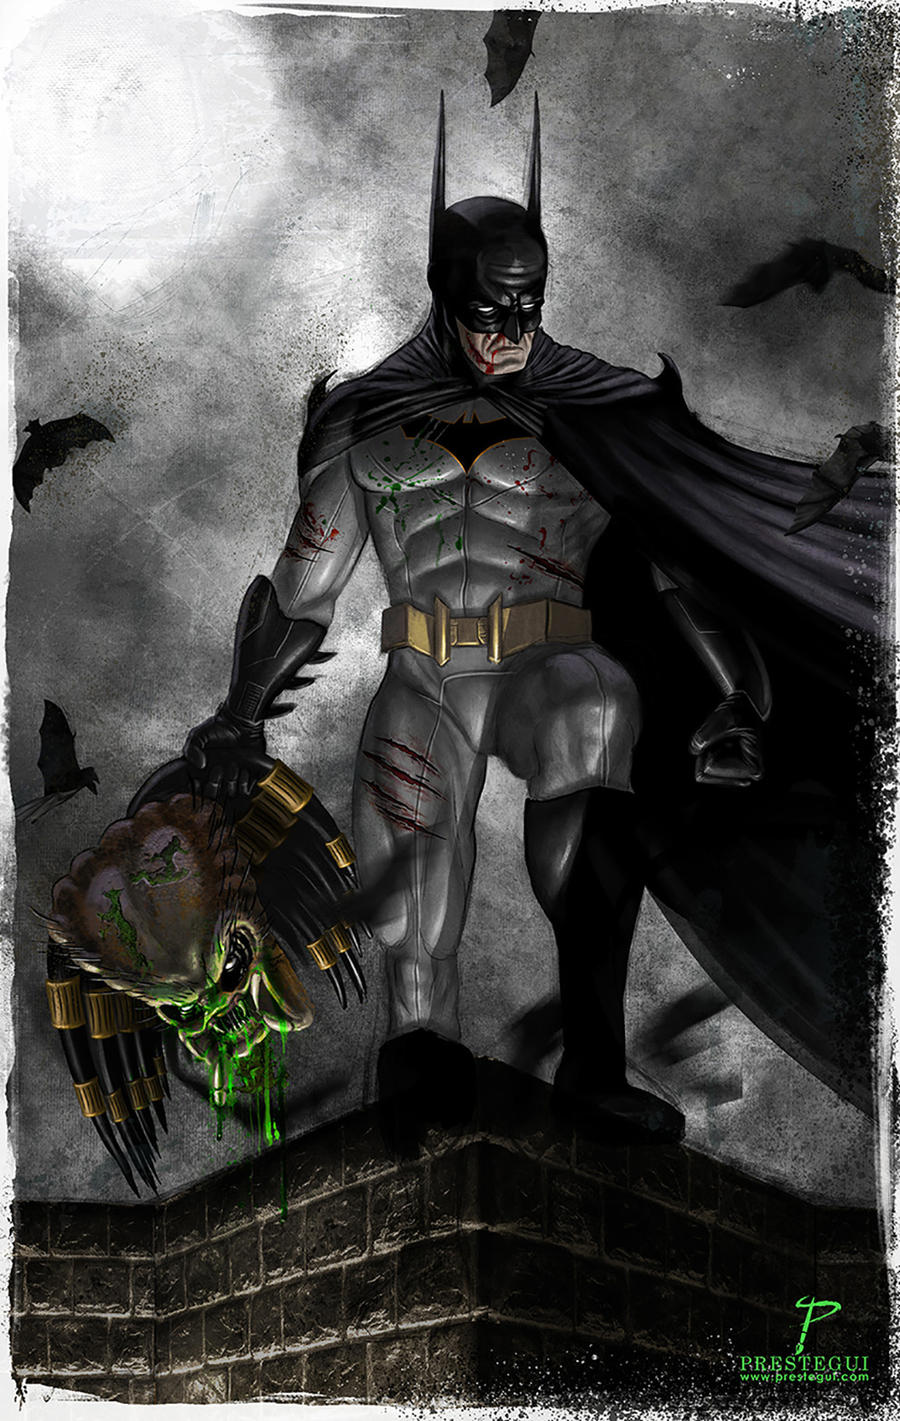 Batman vs Predator by Prestegui on DeviantArt